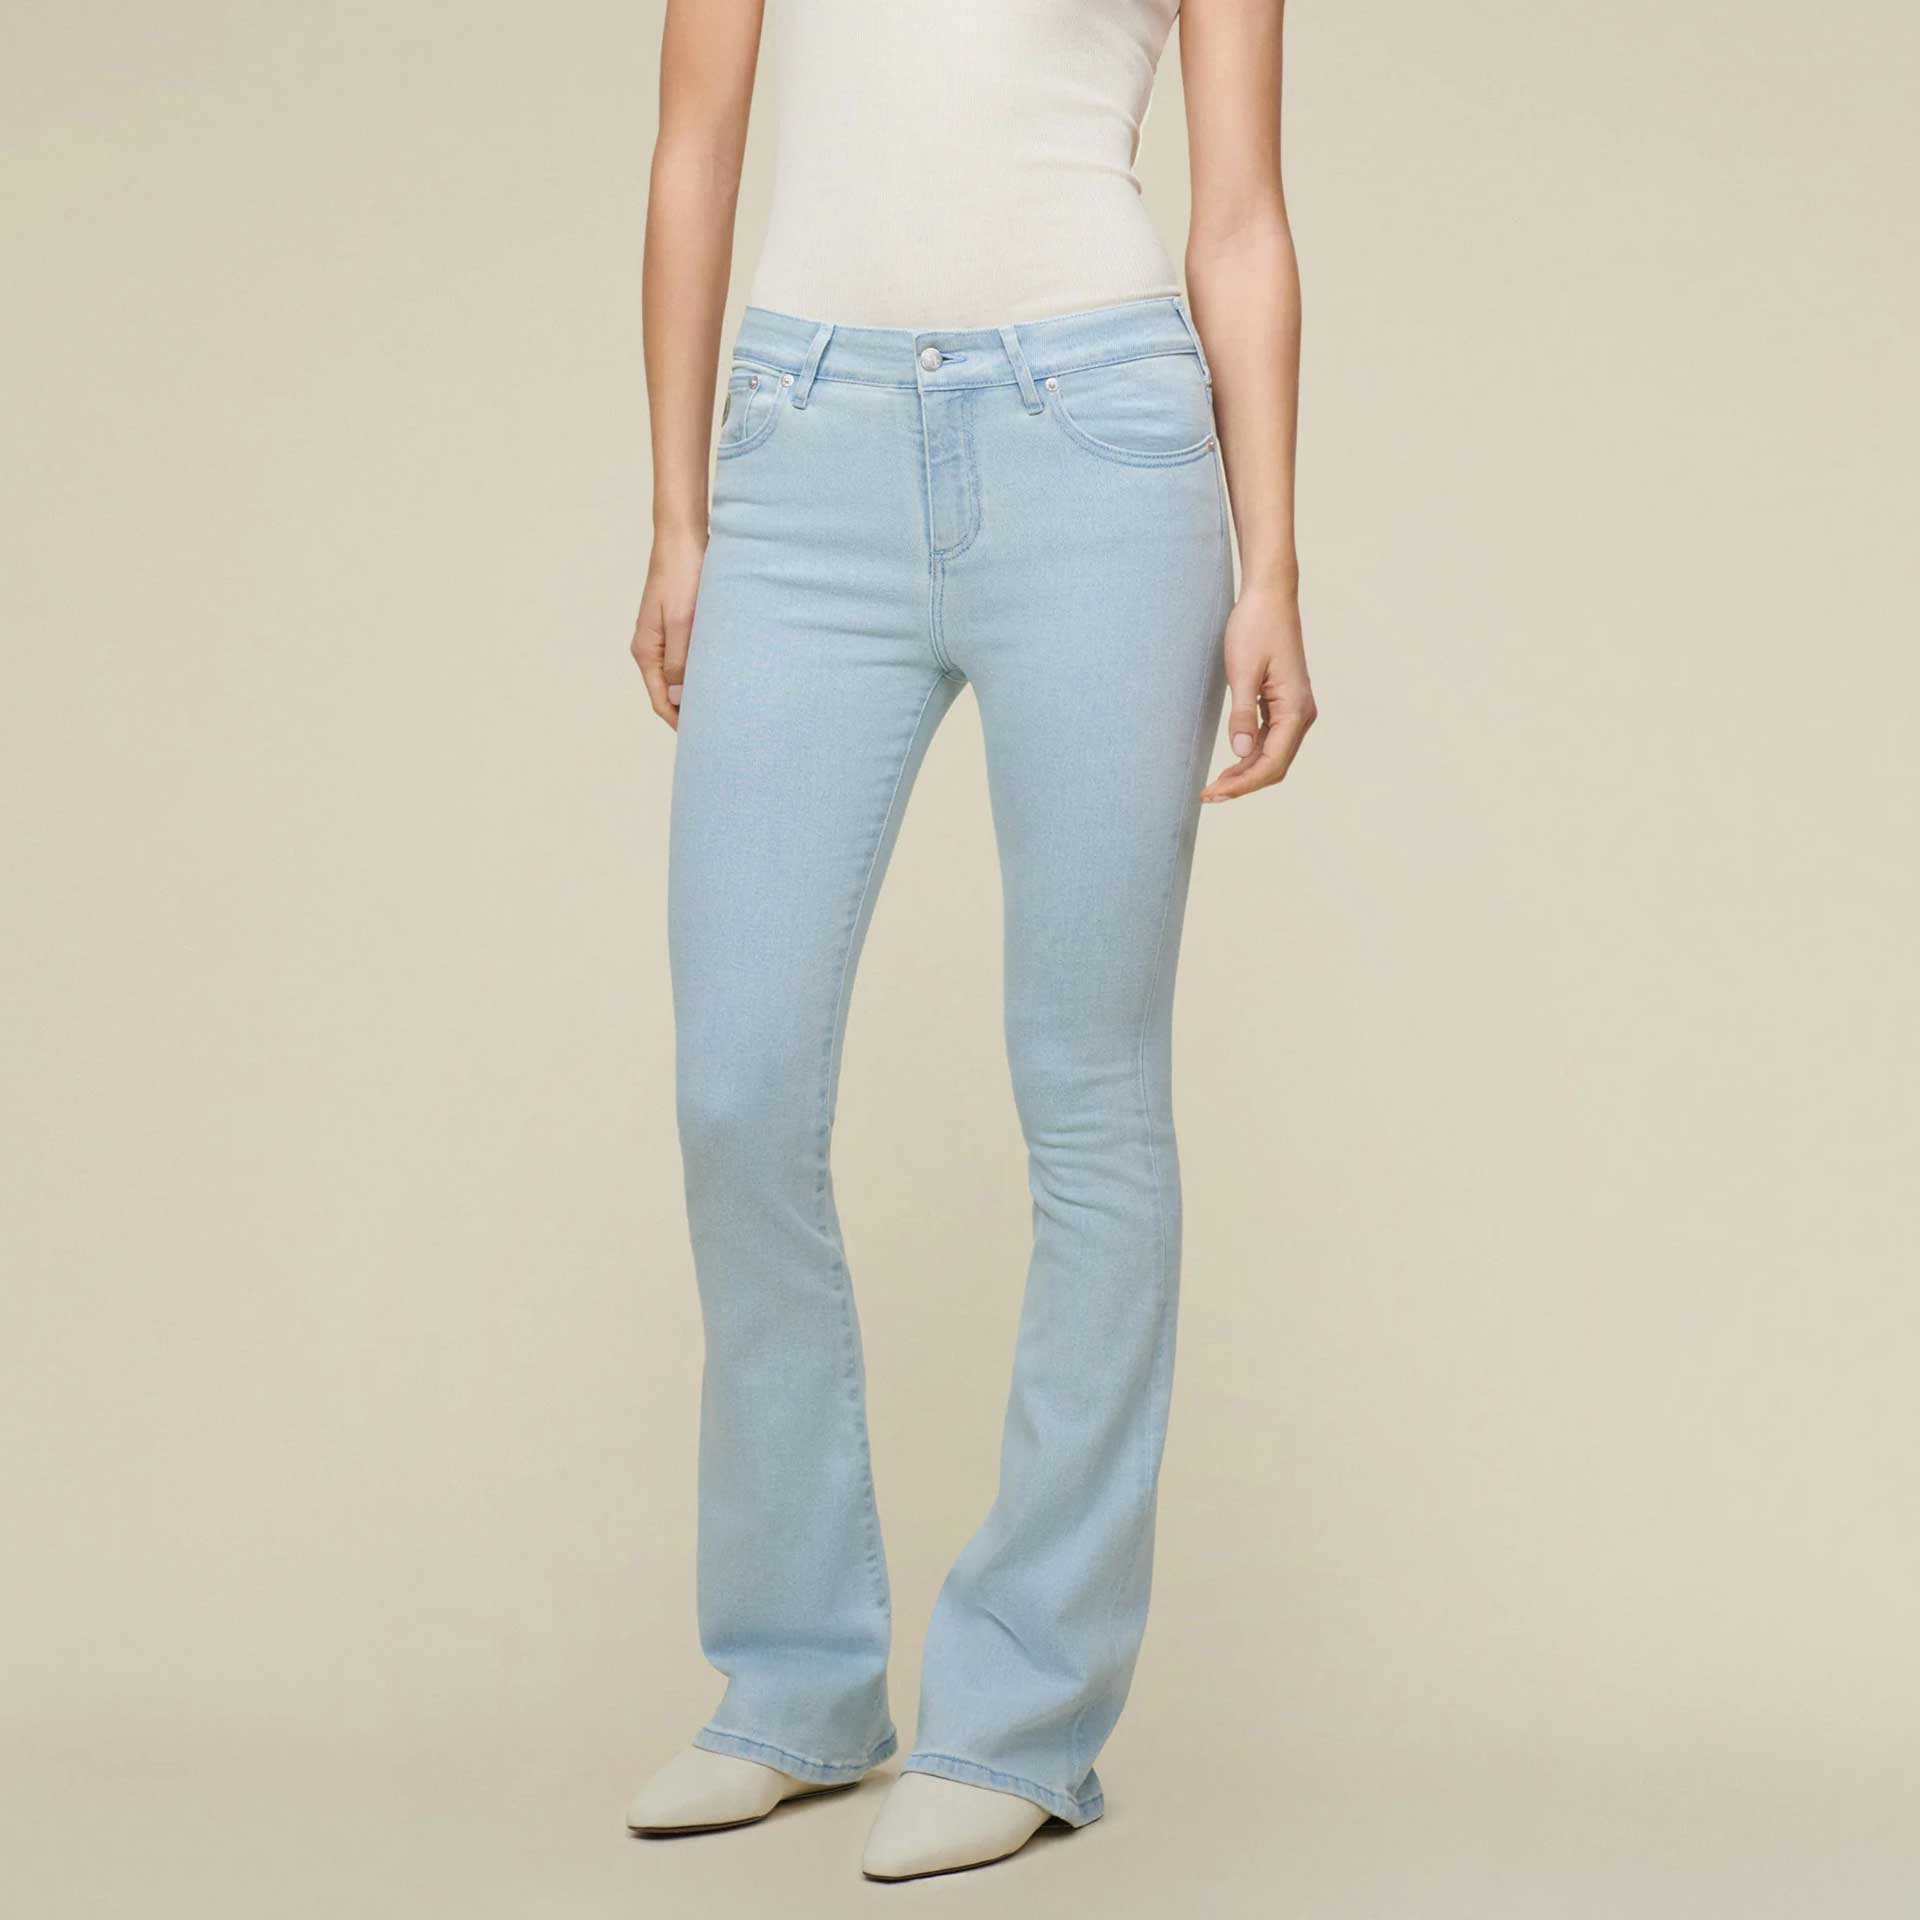 Lois jeans Jeans Raval 16 1